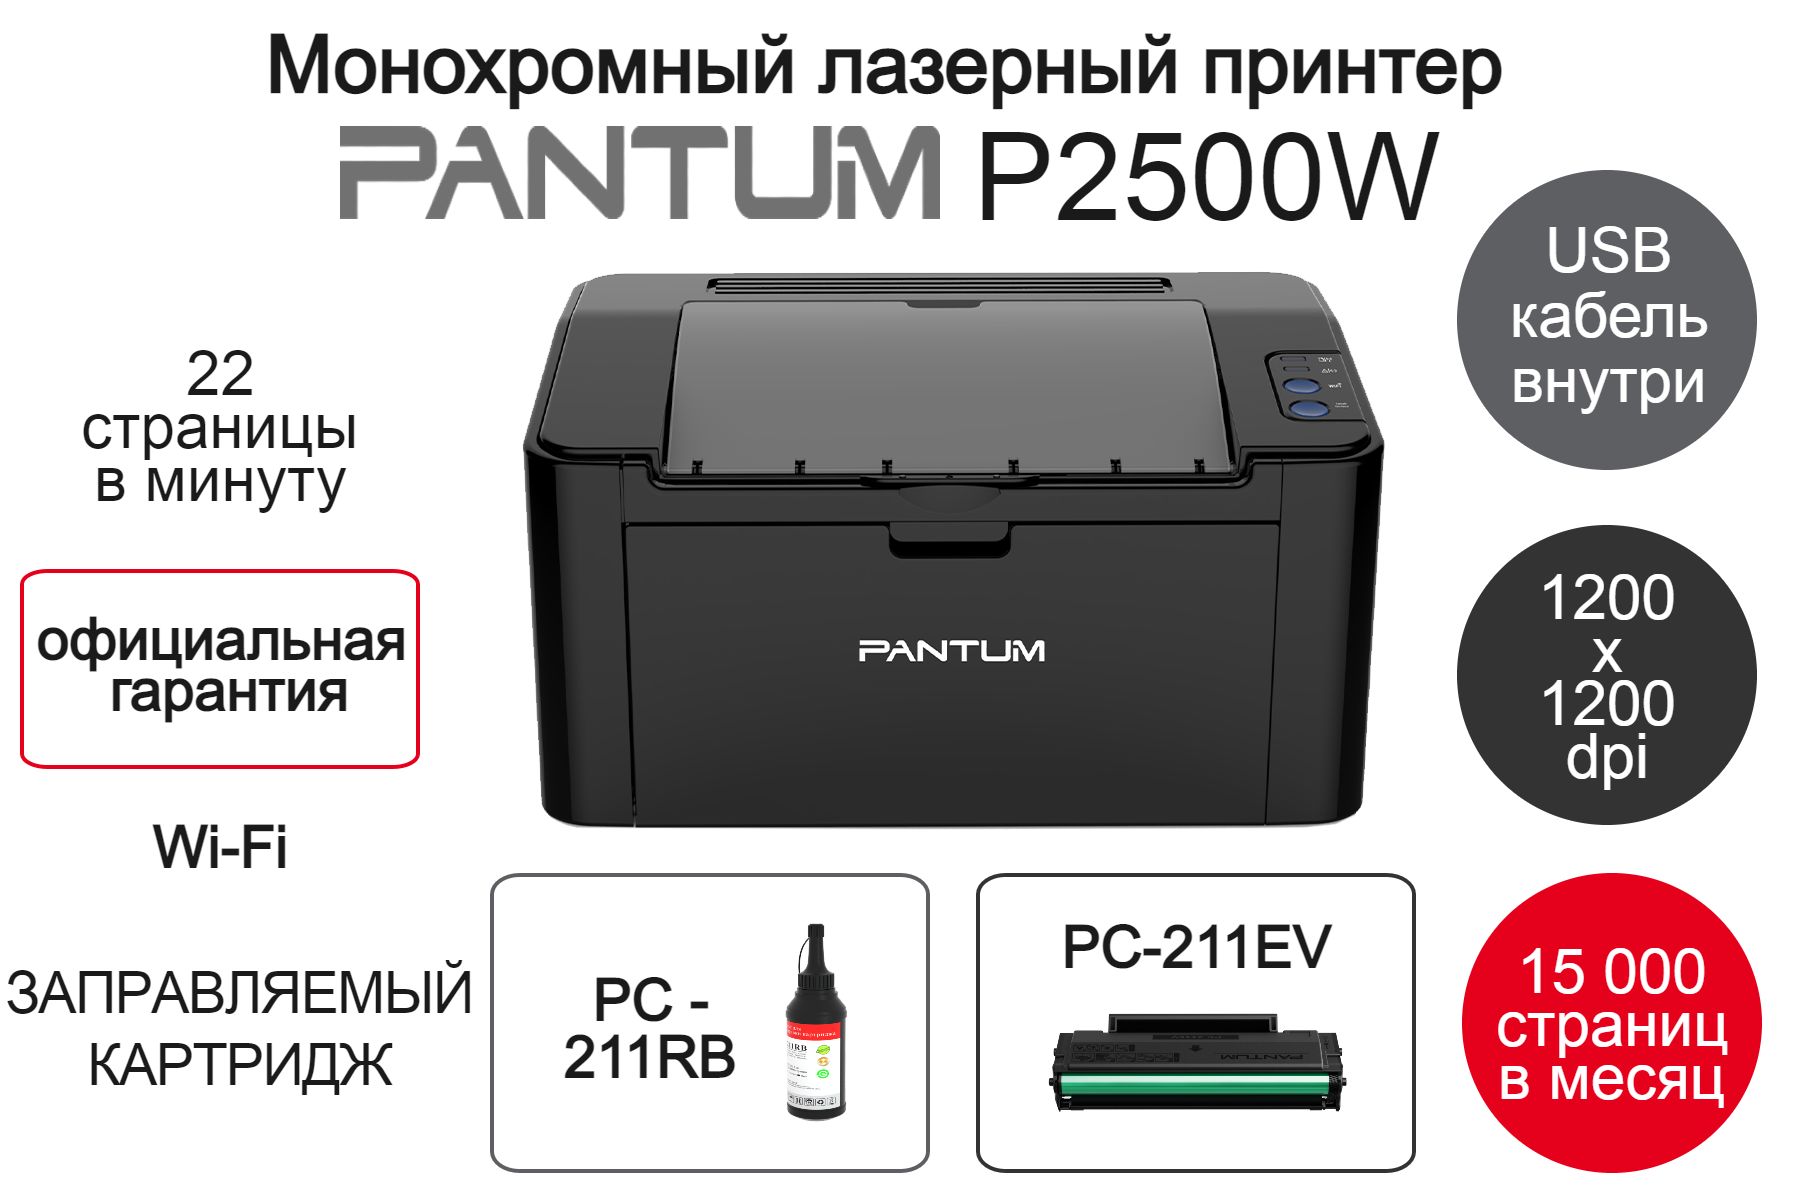 Купить принтер pantum p2500w. Pantum p2500w. Принтер Pantum p2500w. Лазерный монохромный принтер Pantum p2500w. Принтер Pantum p2500w печать.